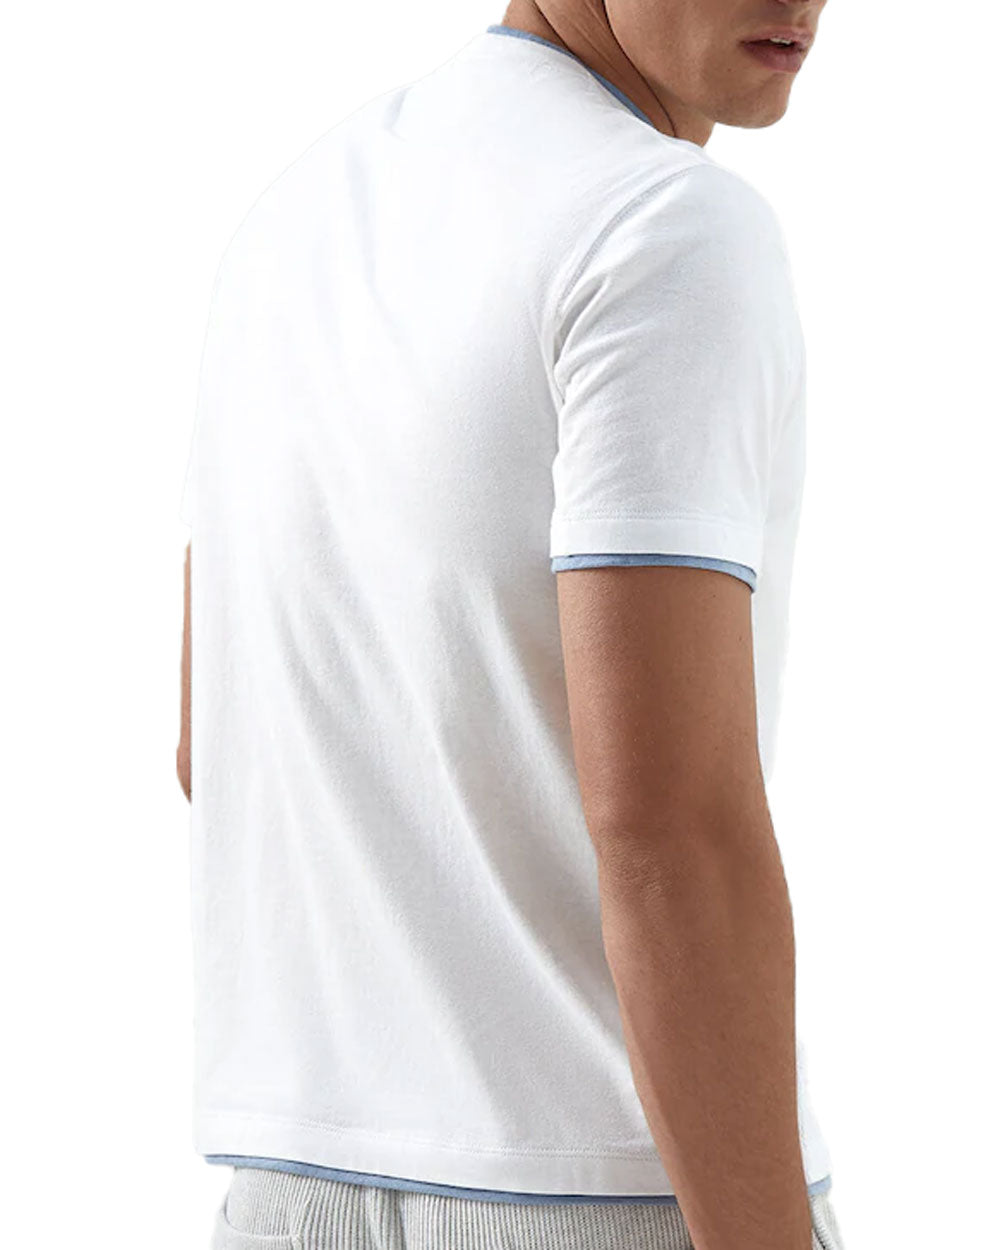 White and Denim Layered T-Shirt